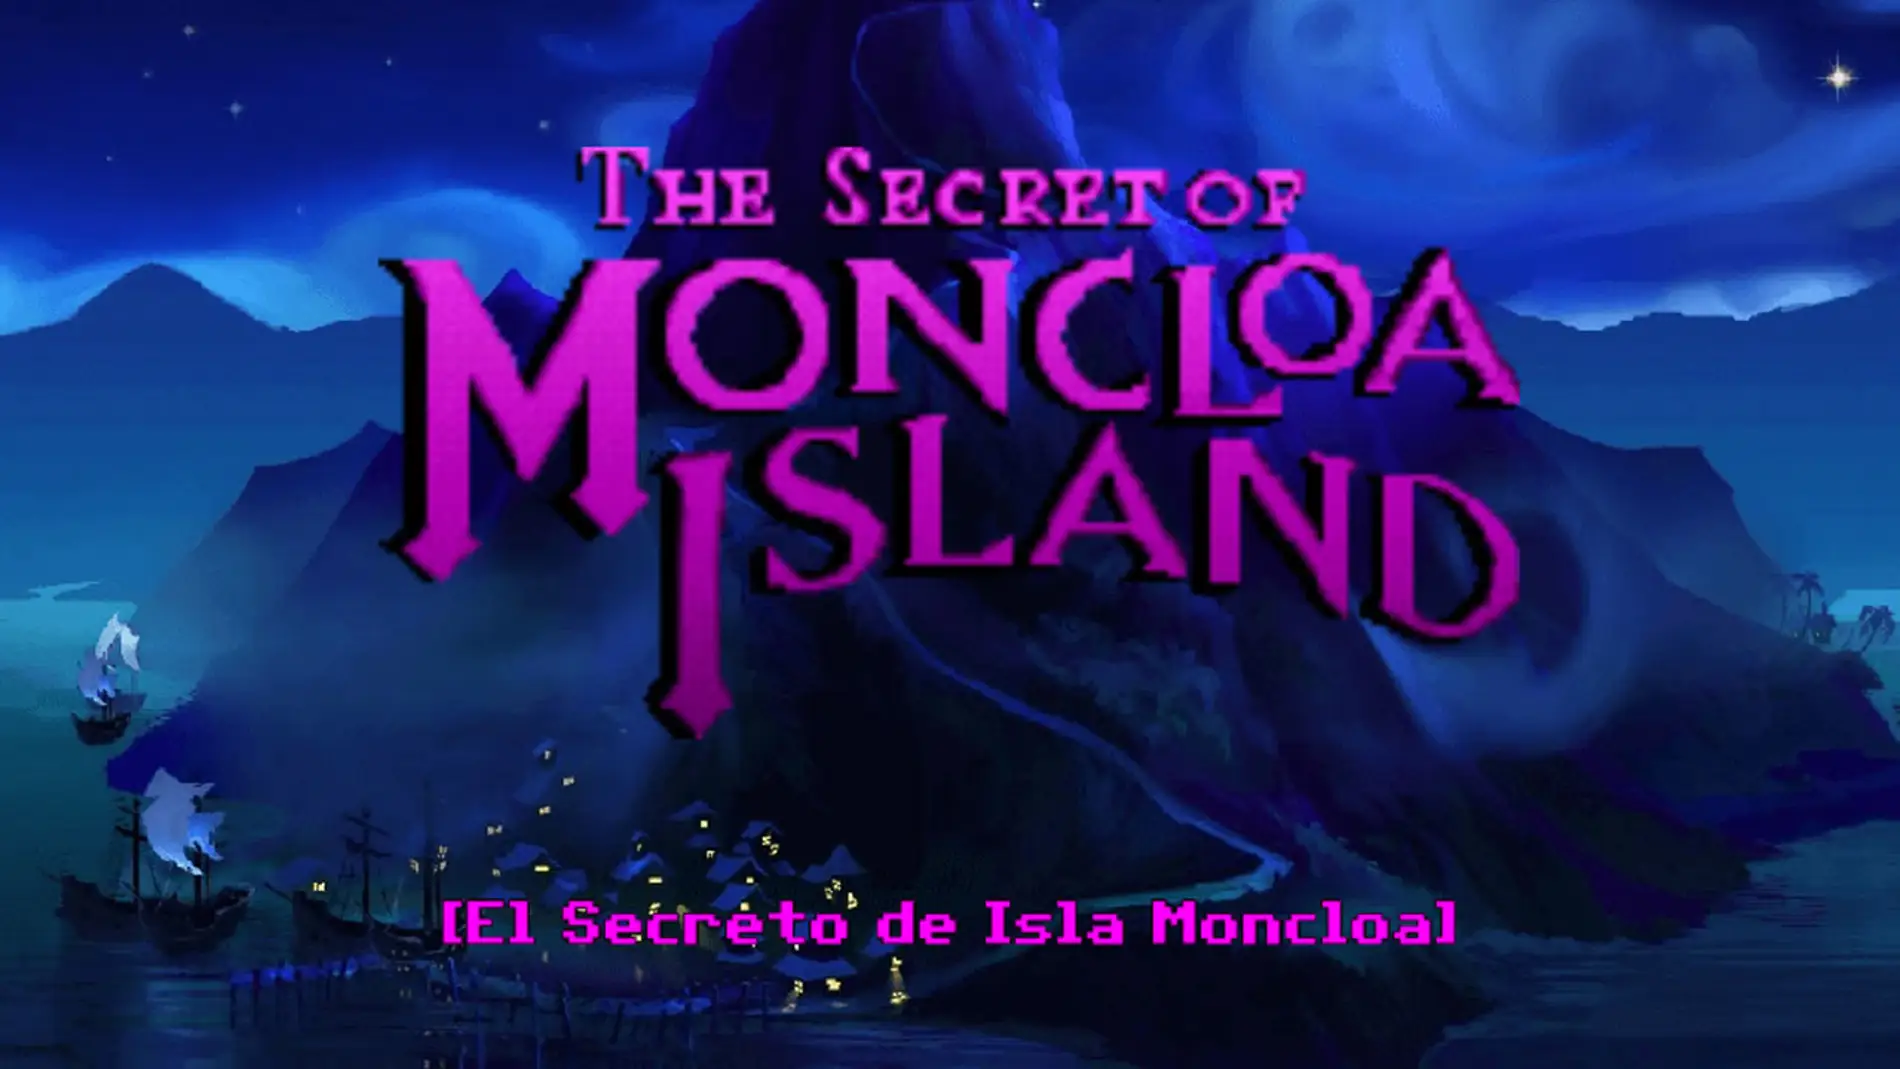 The Secret of Moncloa Island